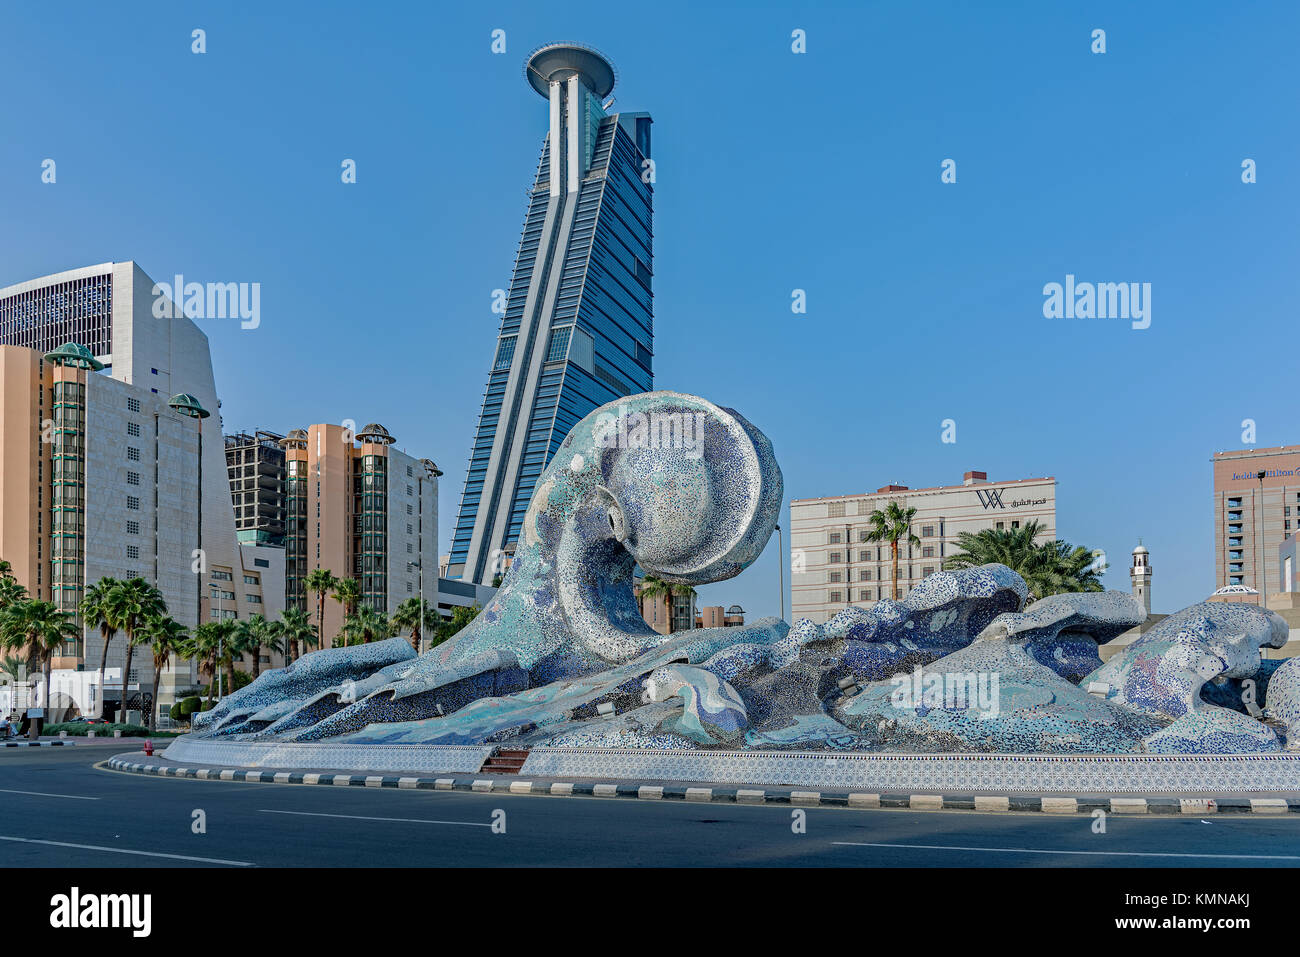 Des bâtiments de la ville de Jeddah, Jeddah, Arabie saoudite. Banque D'Images